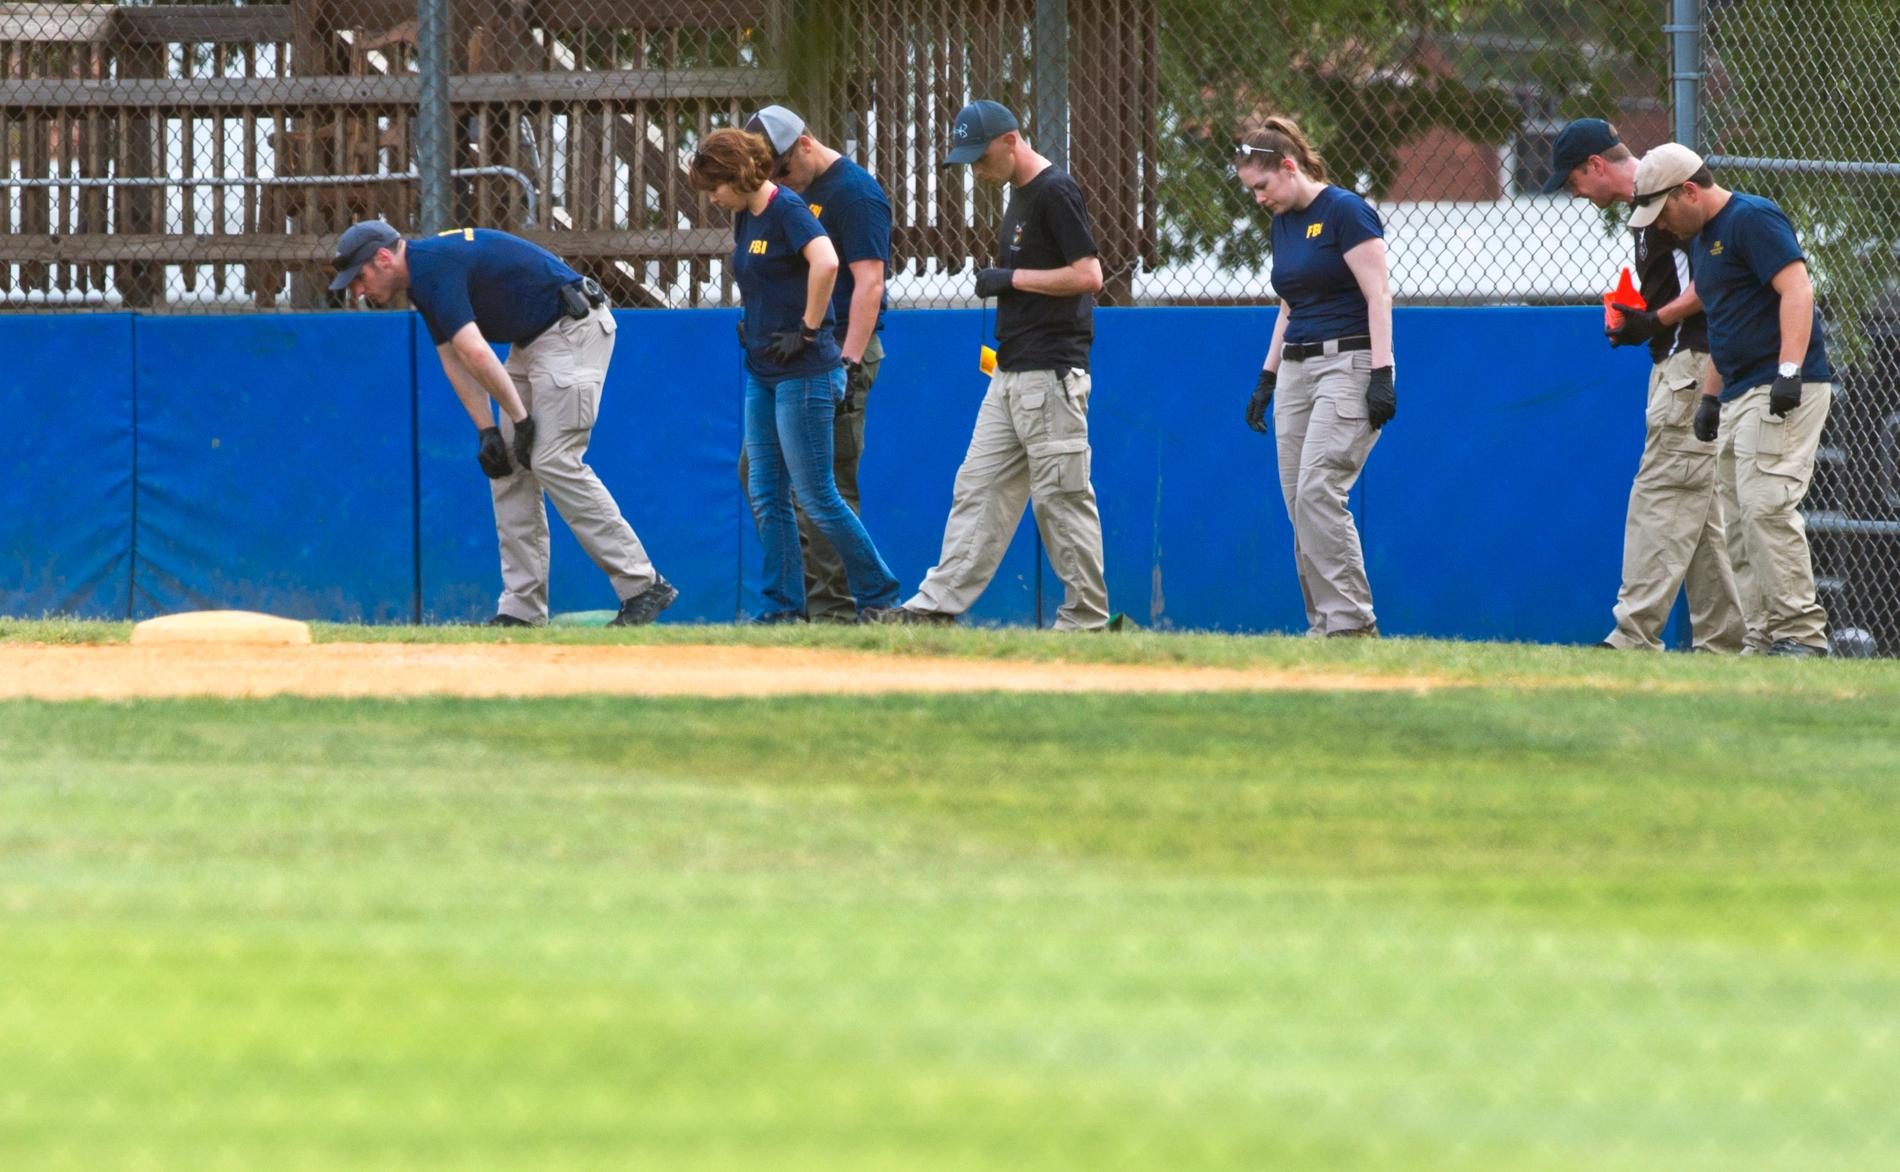 Baseballplan i Virginia där skottlossningen inträffade undersöks av myndigheterna.